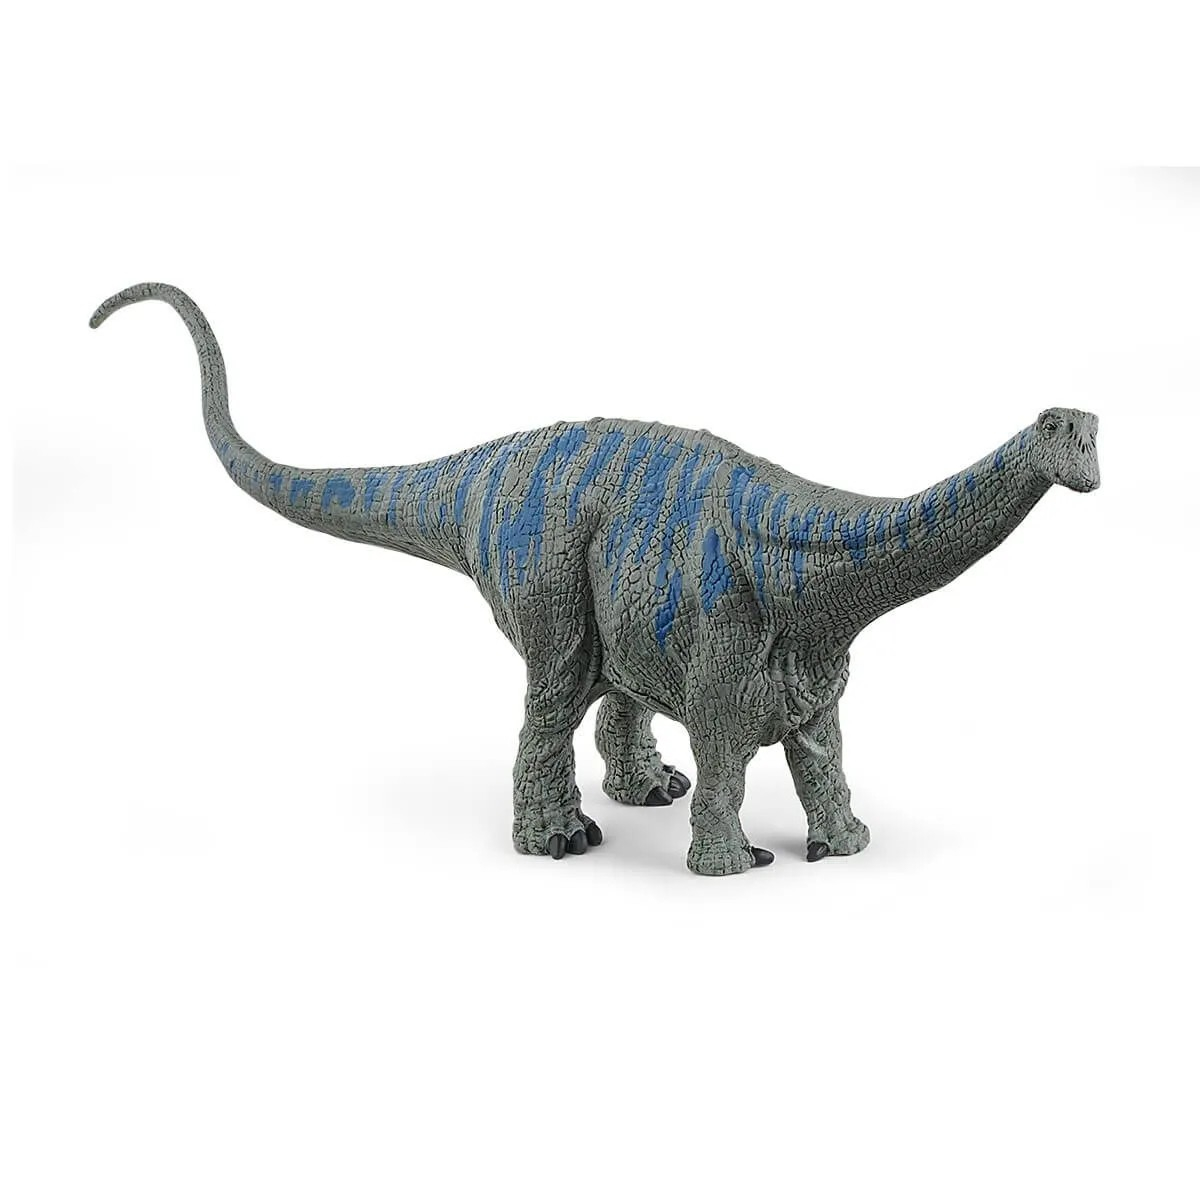 Dinosaur Schleich 15027, Brontozaur